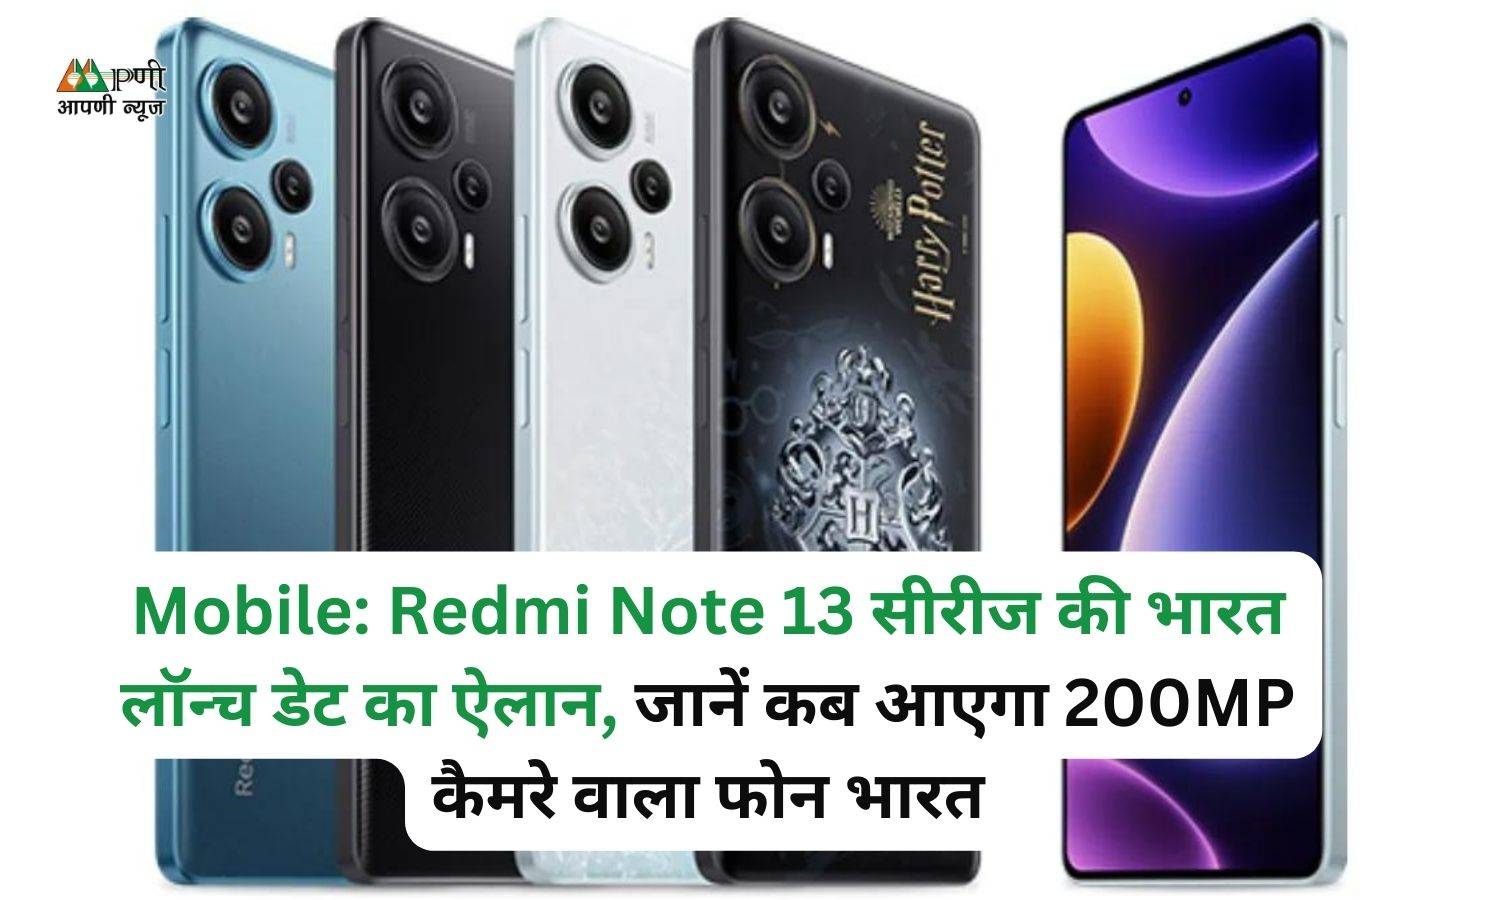 Mobile: Redmi Note 13 सीरीज की भारत लॉन्च डेट का ऐलान, जानें कब आएगा 200MP कैमरे वाला फोन भारत